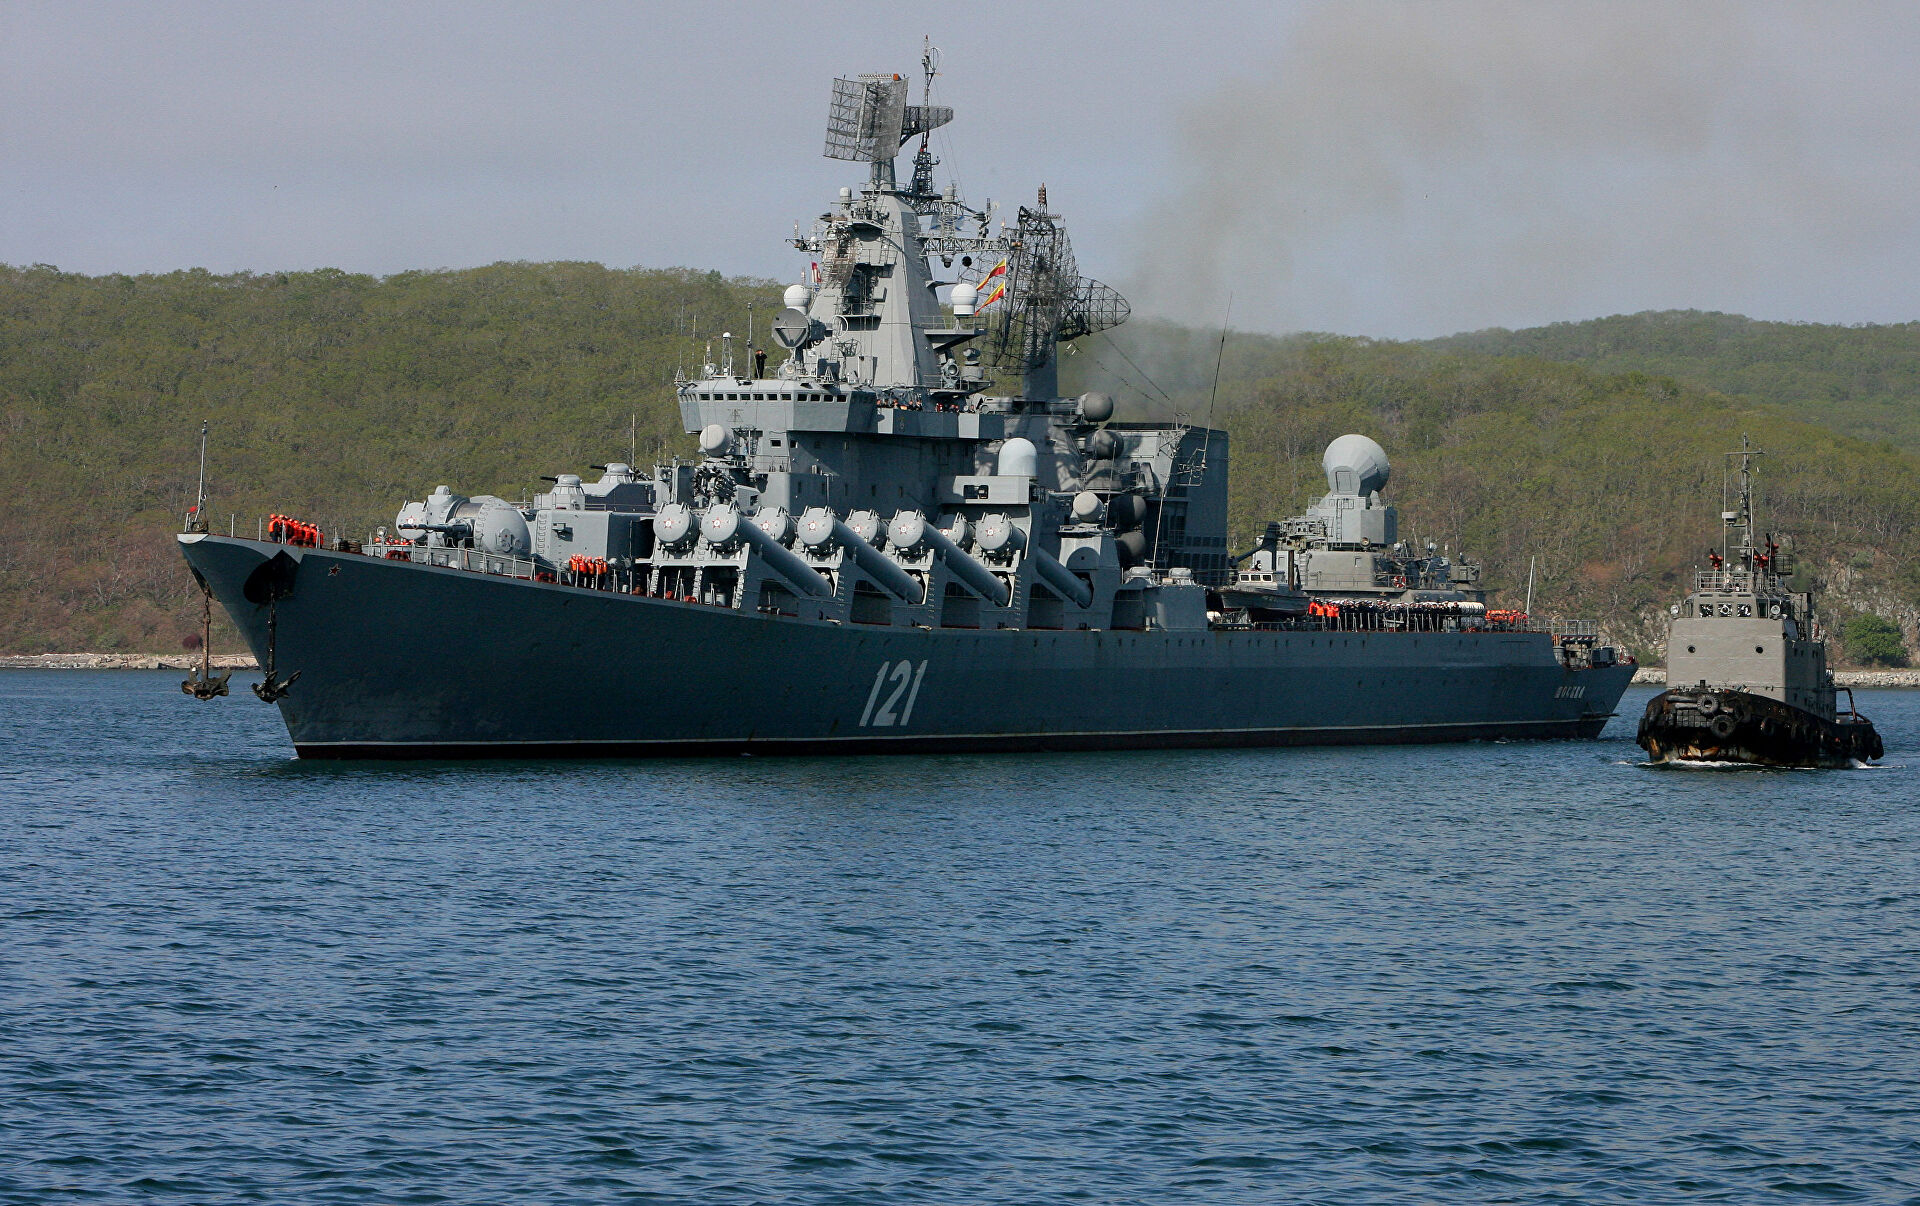 Un buque de guerra ruso traslada blindados a puerto cercano a Mariúpol